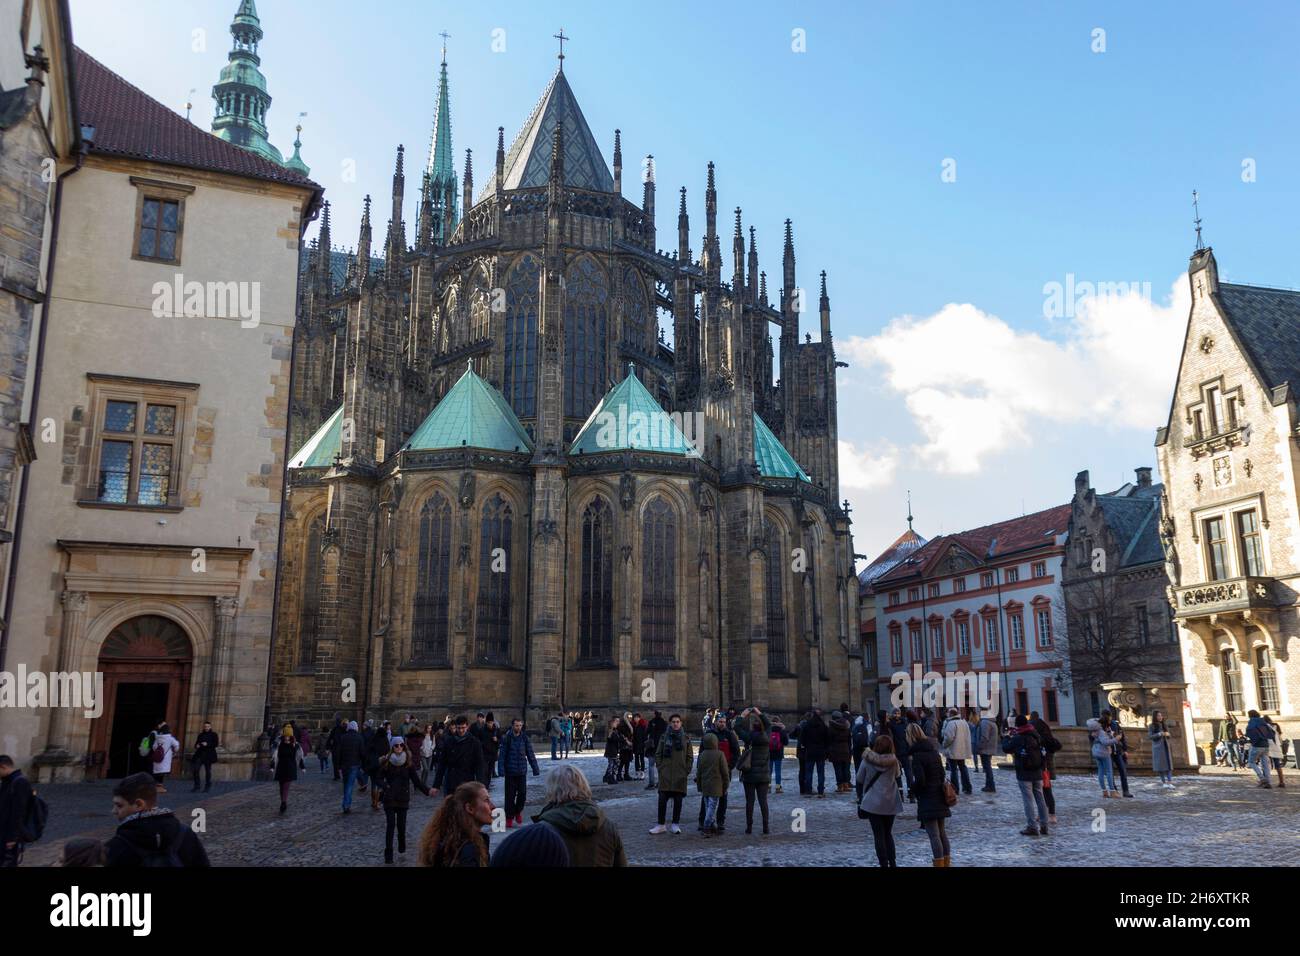 Praga, Repubblica Ceca - Cattedrale di San Vito Foto Stock